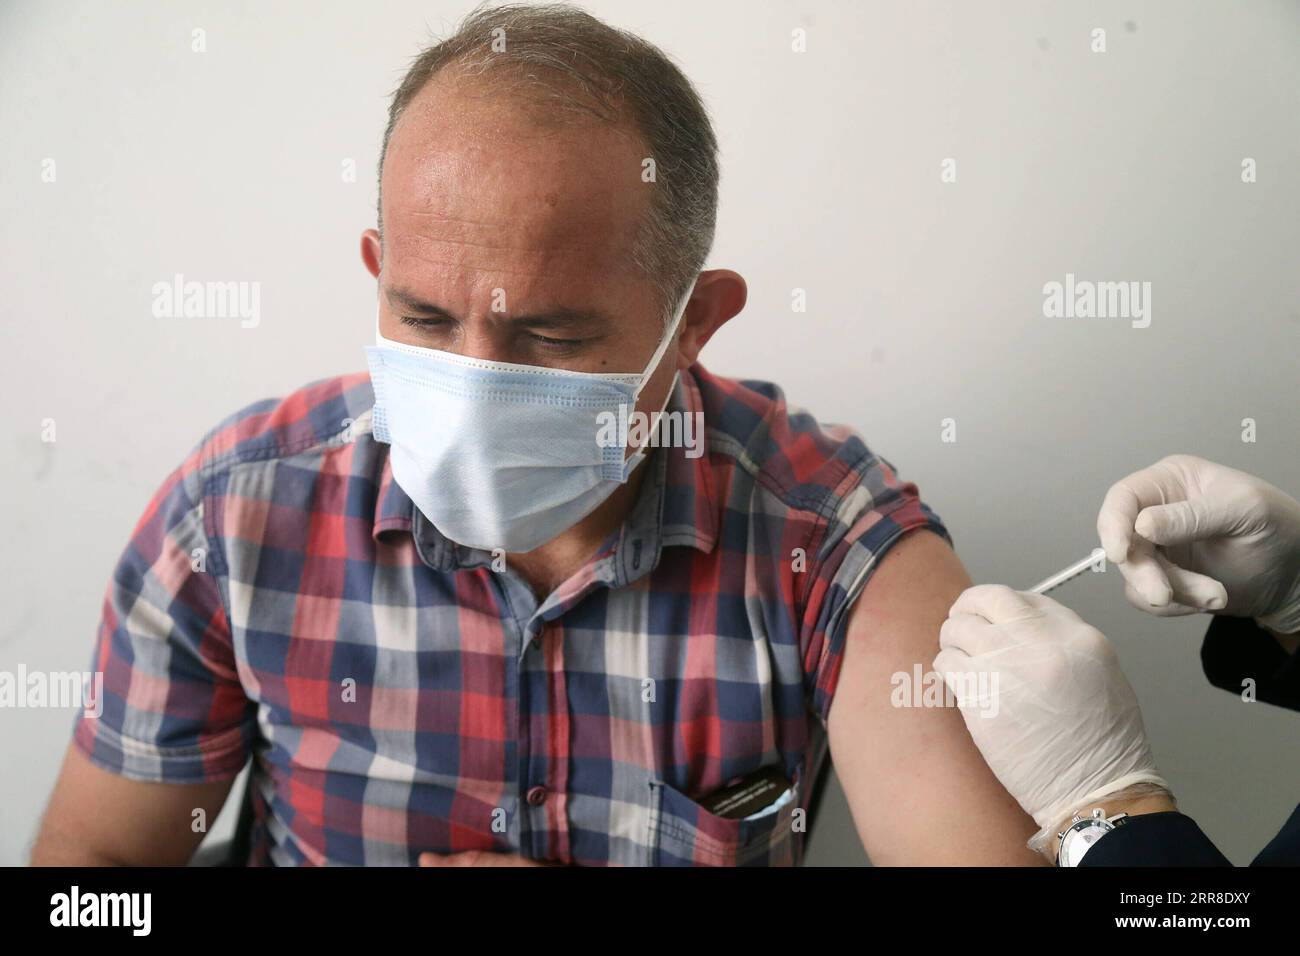 210503 -- ANKARA, 3. Mai 2021 -- Ein Mann erhält am 3. Mai 2021 in Ankara, Türkei, den COVID-19-Impfstoff. Die Zahl der COVID-19-Patienten, die in den letzten zwei Wochen in der Türkei einen Antrag auf Hospitalisierung gestellt haben, ist um die Hälfte gesunken, teilte Gesundheitsminister Fahrettin Koca am Montag mit. Foto von /Xinhua TURKEY-ANKARA-COVID-19-VACCINATION MustafaxKaya PUBLICATIONxNOTxINxCHN Stockfoto